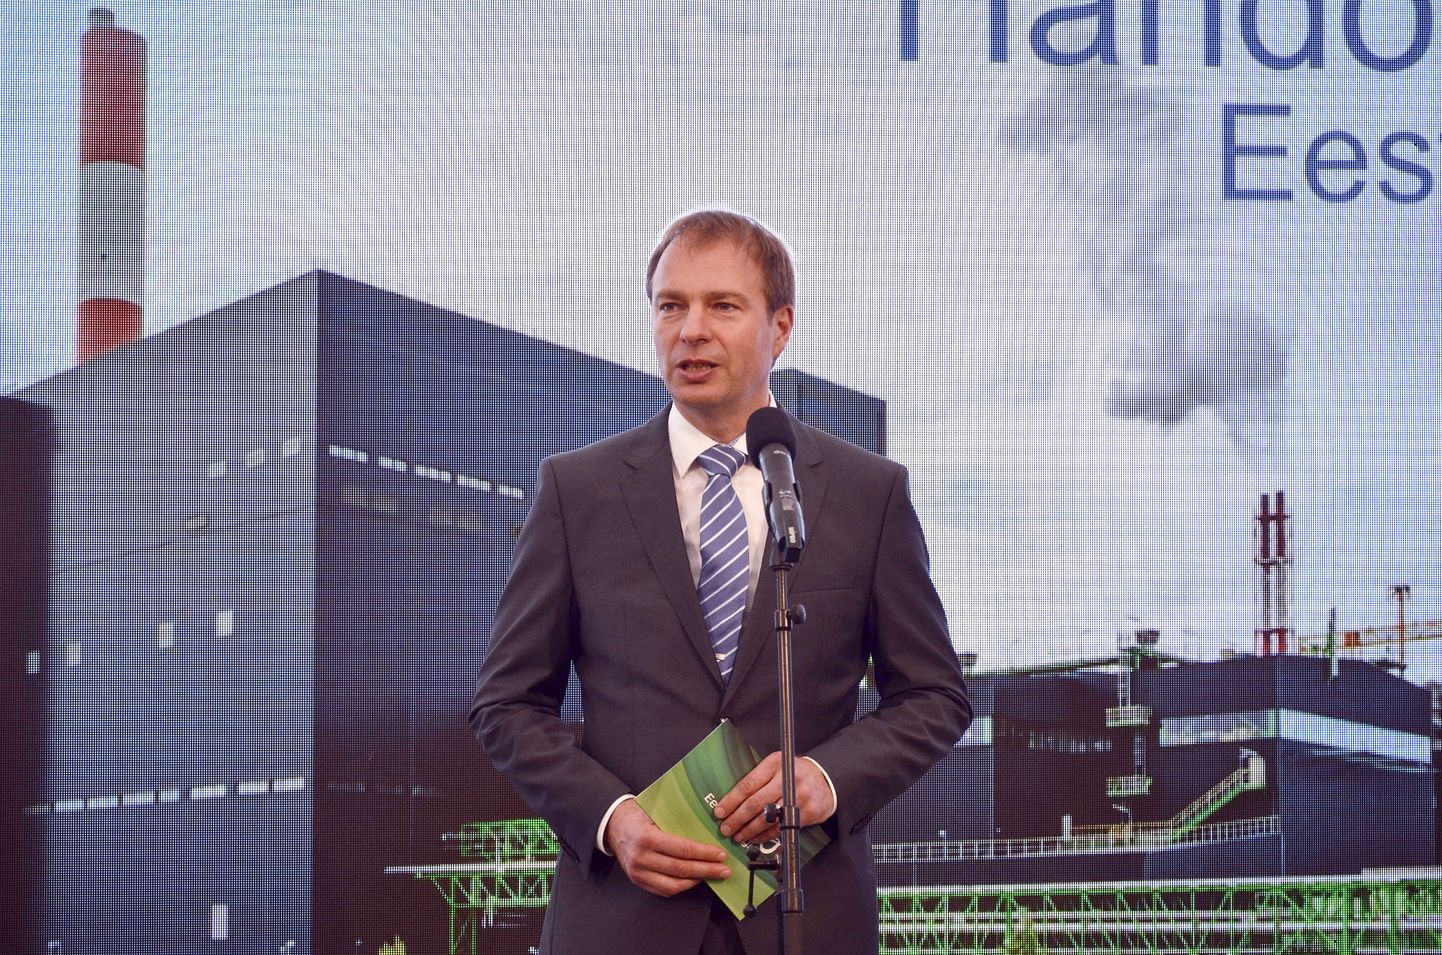 По словам Хандо Суттера, "Eesti Energia" уменьшил в прошлом году выбросы углекислого газа почти наполовину по сравнению с 2018 годом.